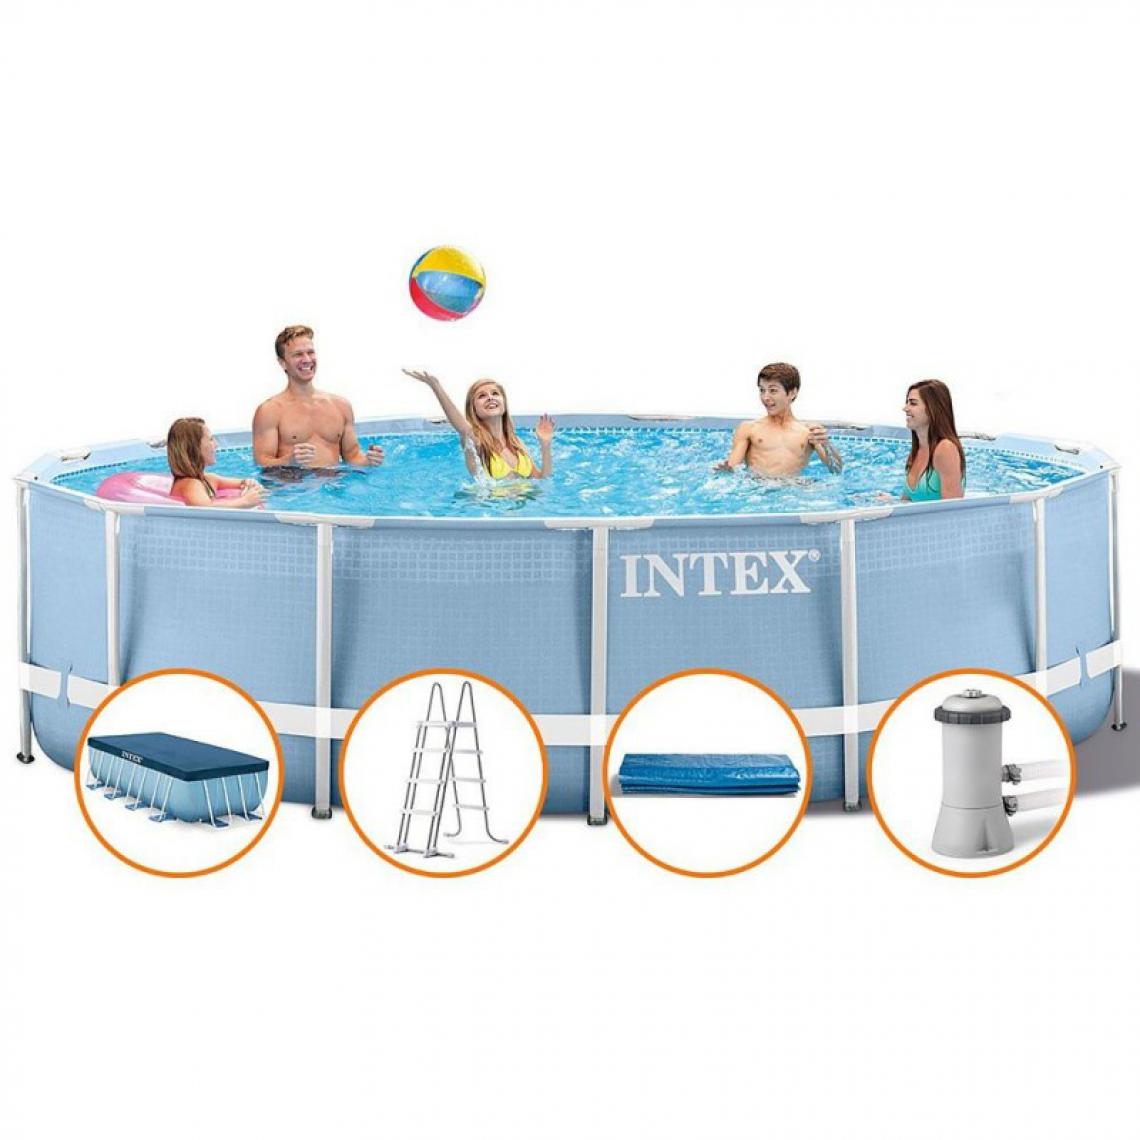 Intex - Piscine tubulaire ronde Prism Intex 4,57 x 1,22 m avec accessoires Intex - Piscine Tubulaire